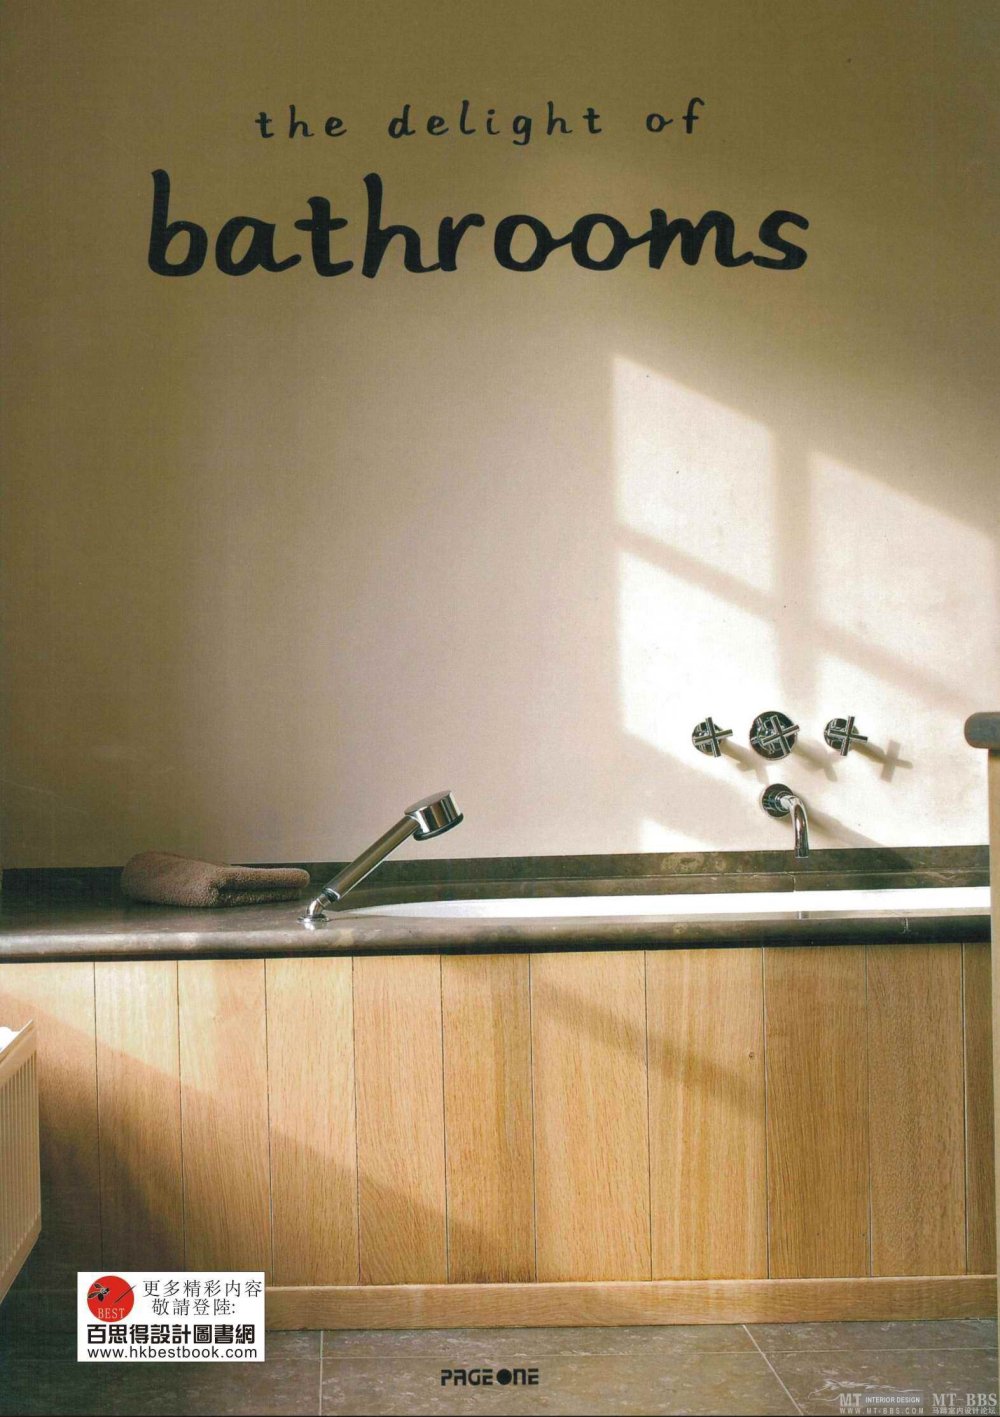 0国外样板房111bathrooms（上传完毕)_000封面.jpg